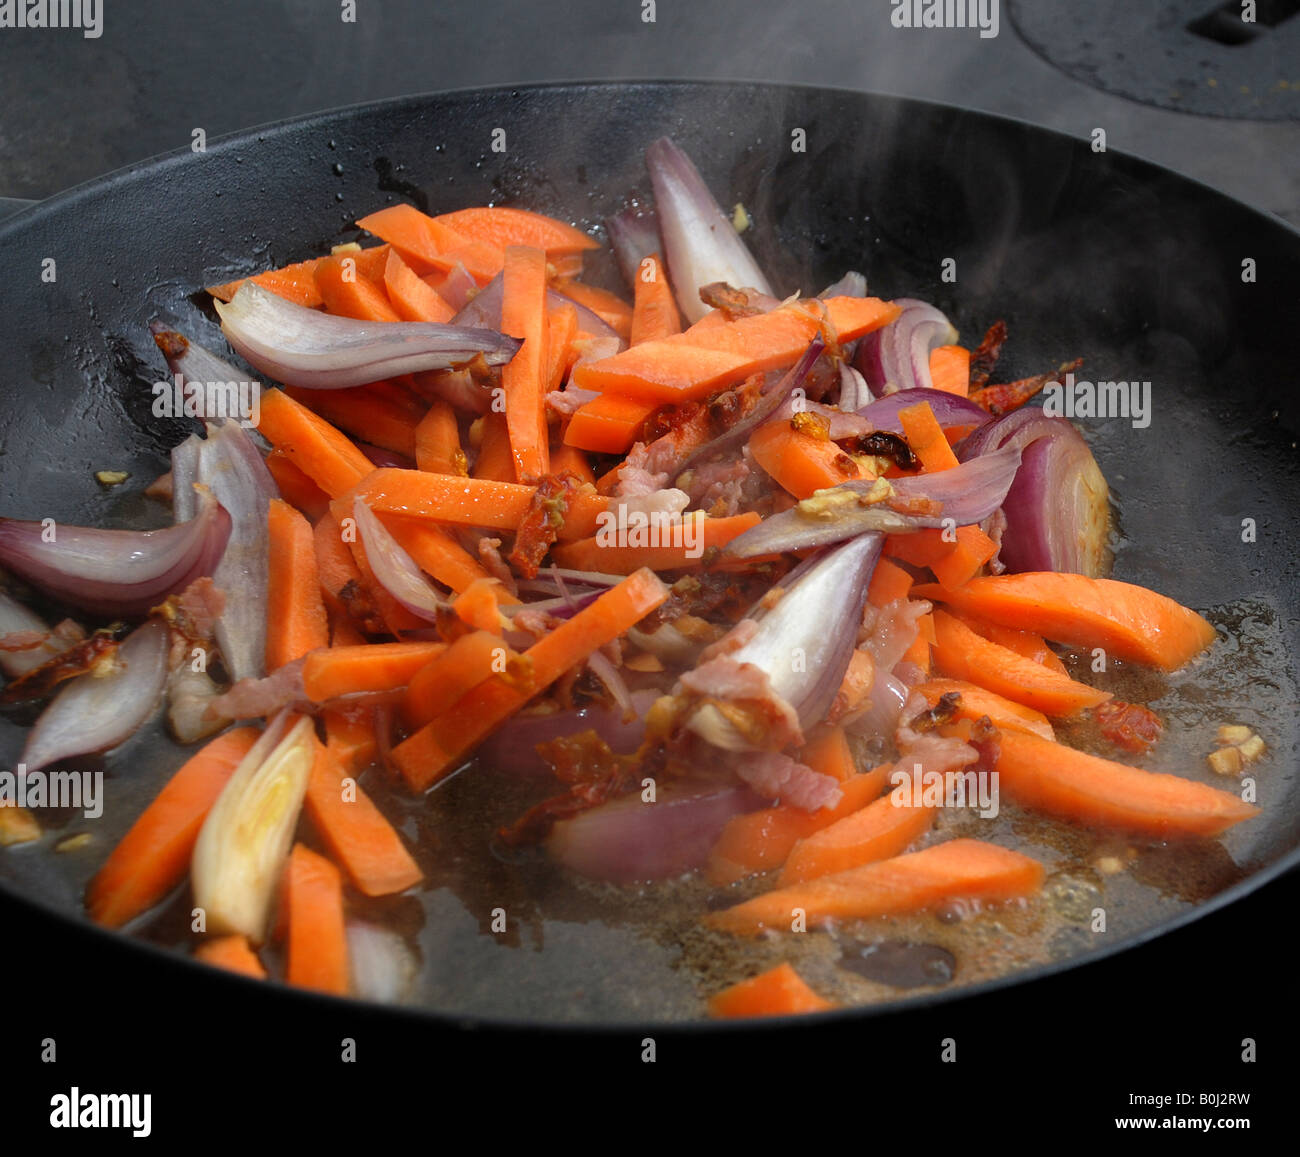 Braten, Karotten, Zwiebeln und getrockneten Tomaten mit einer sichtbaren Dampf Stockfoto